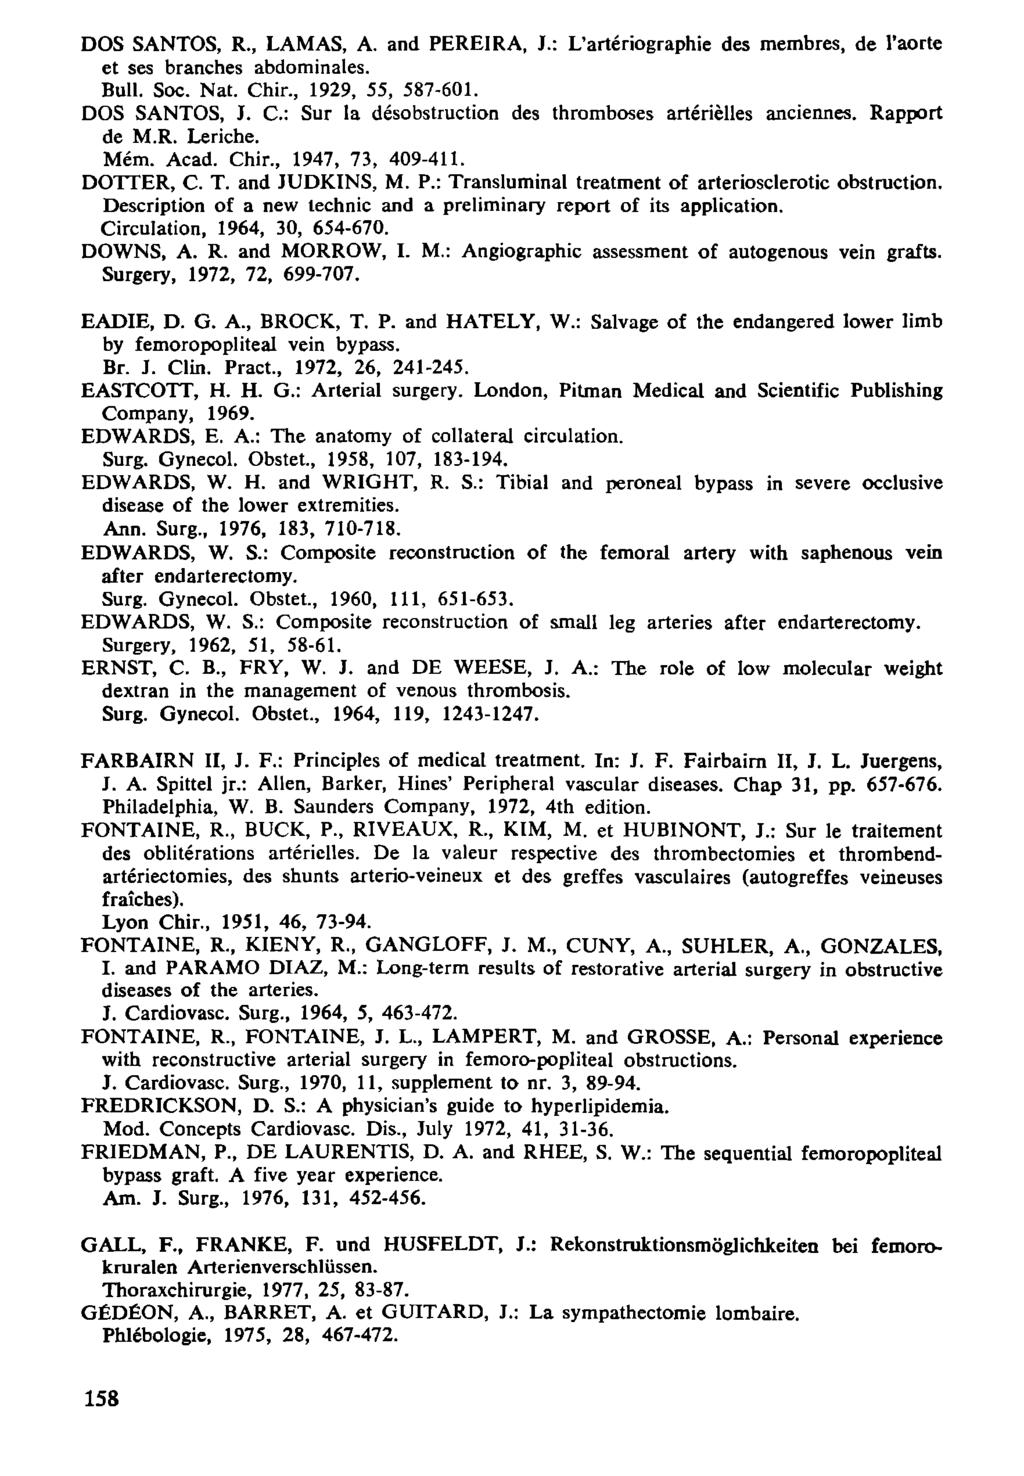 DOS SANTOS, R., LAMAS, A. and PEREIRA, J.: L'artériographie des membres, de l'aorte et ses branches abdominales. Bull. Soc. Nat. Chir., 929, 55, 587-6. DOS SANTOS, J.